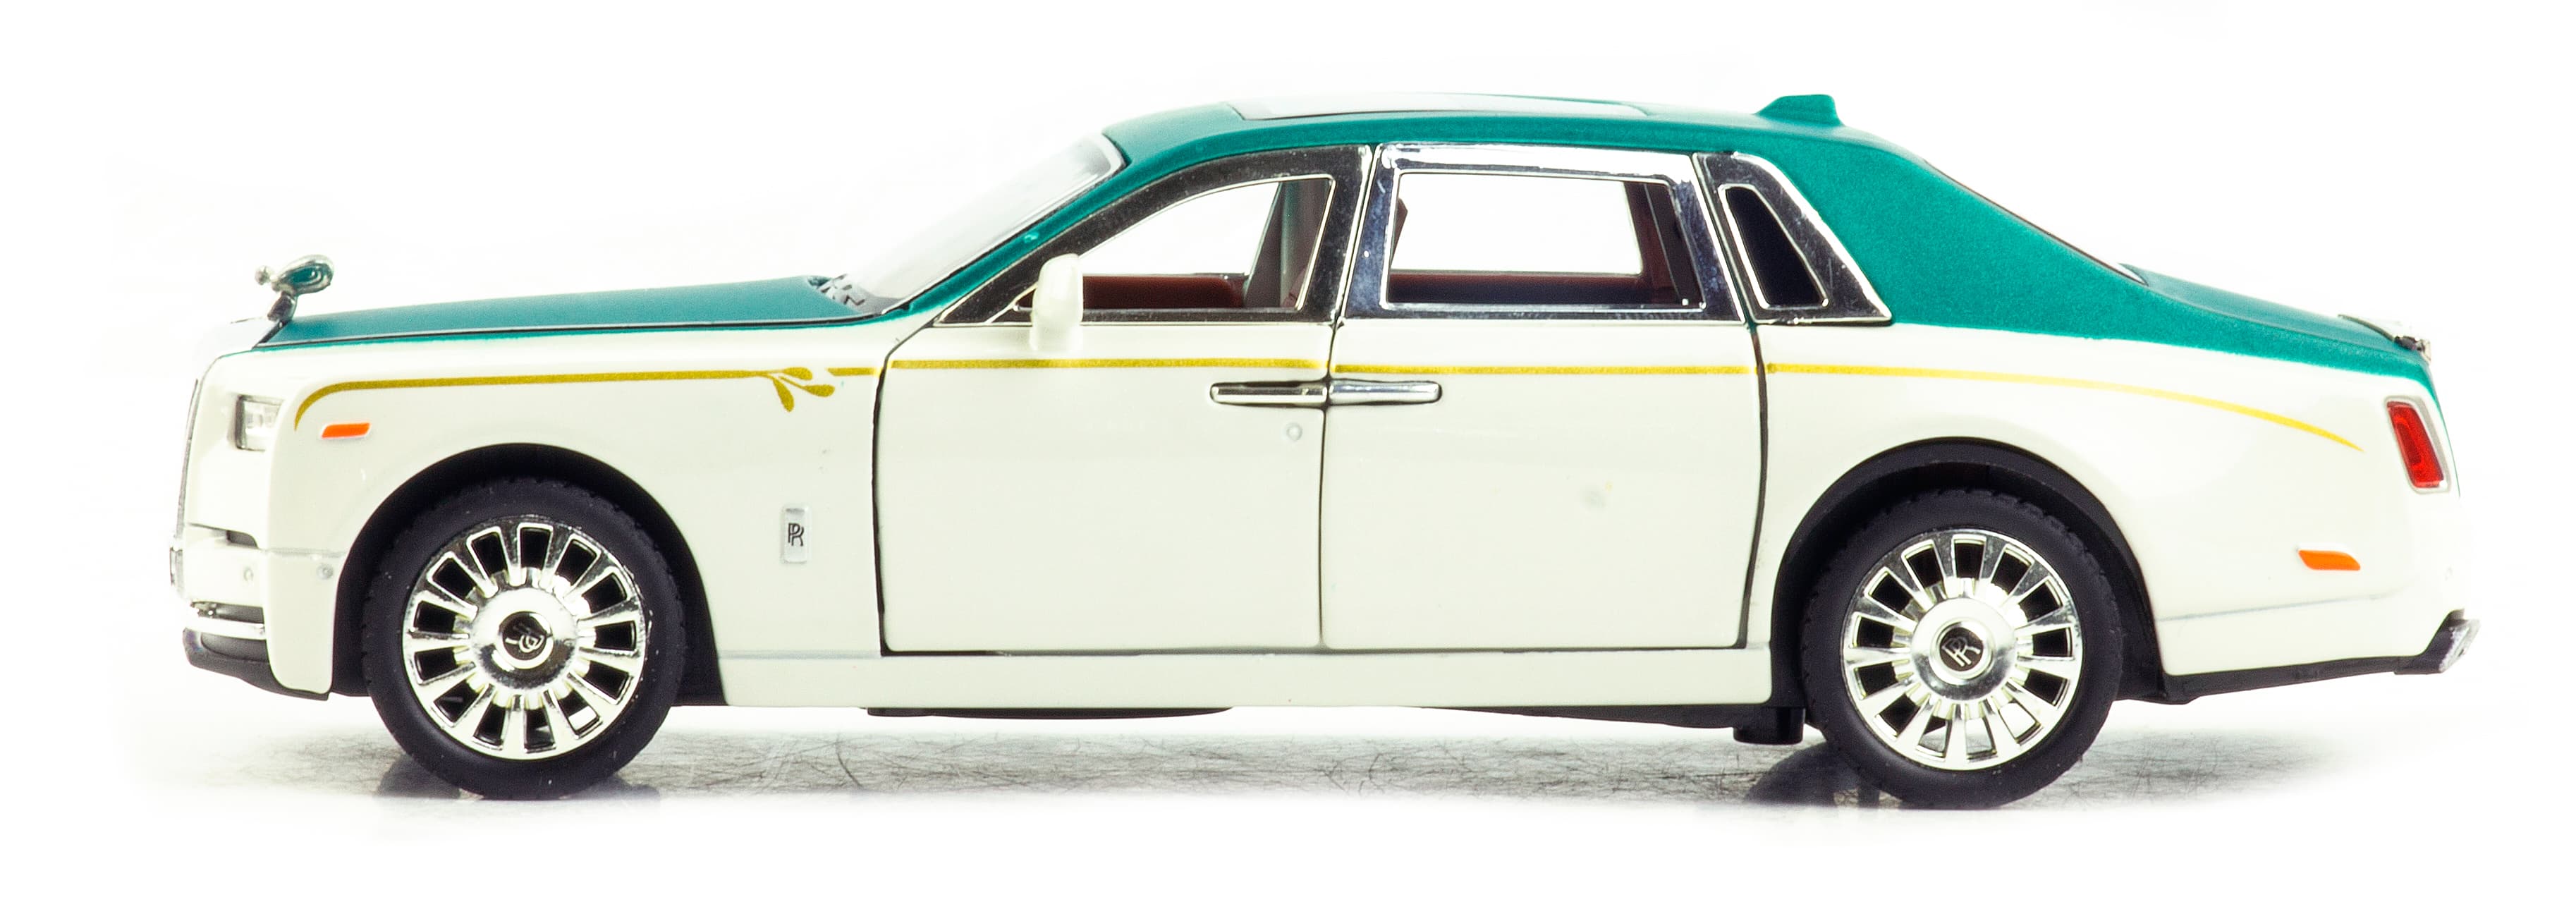 Металлическая машинка Newao Model 1:32 «Rolls-Royce Phantom» XA3229B, 17 см., инерционная, свет, звук / Белый